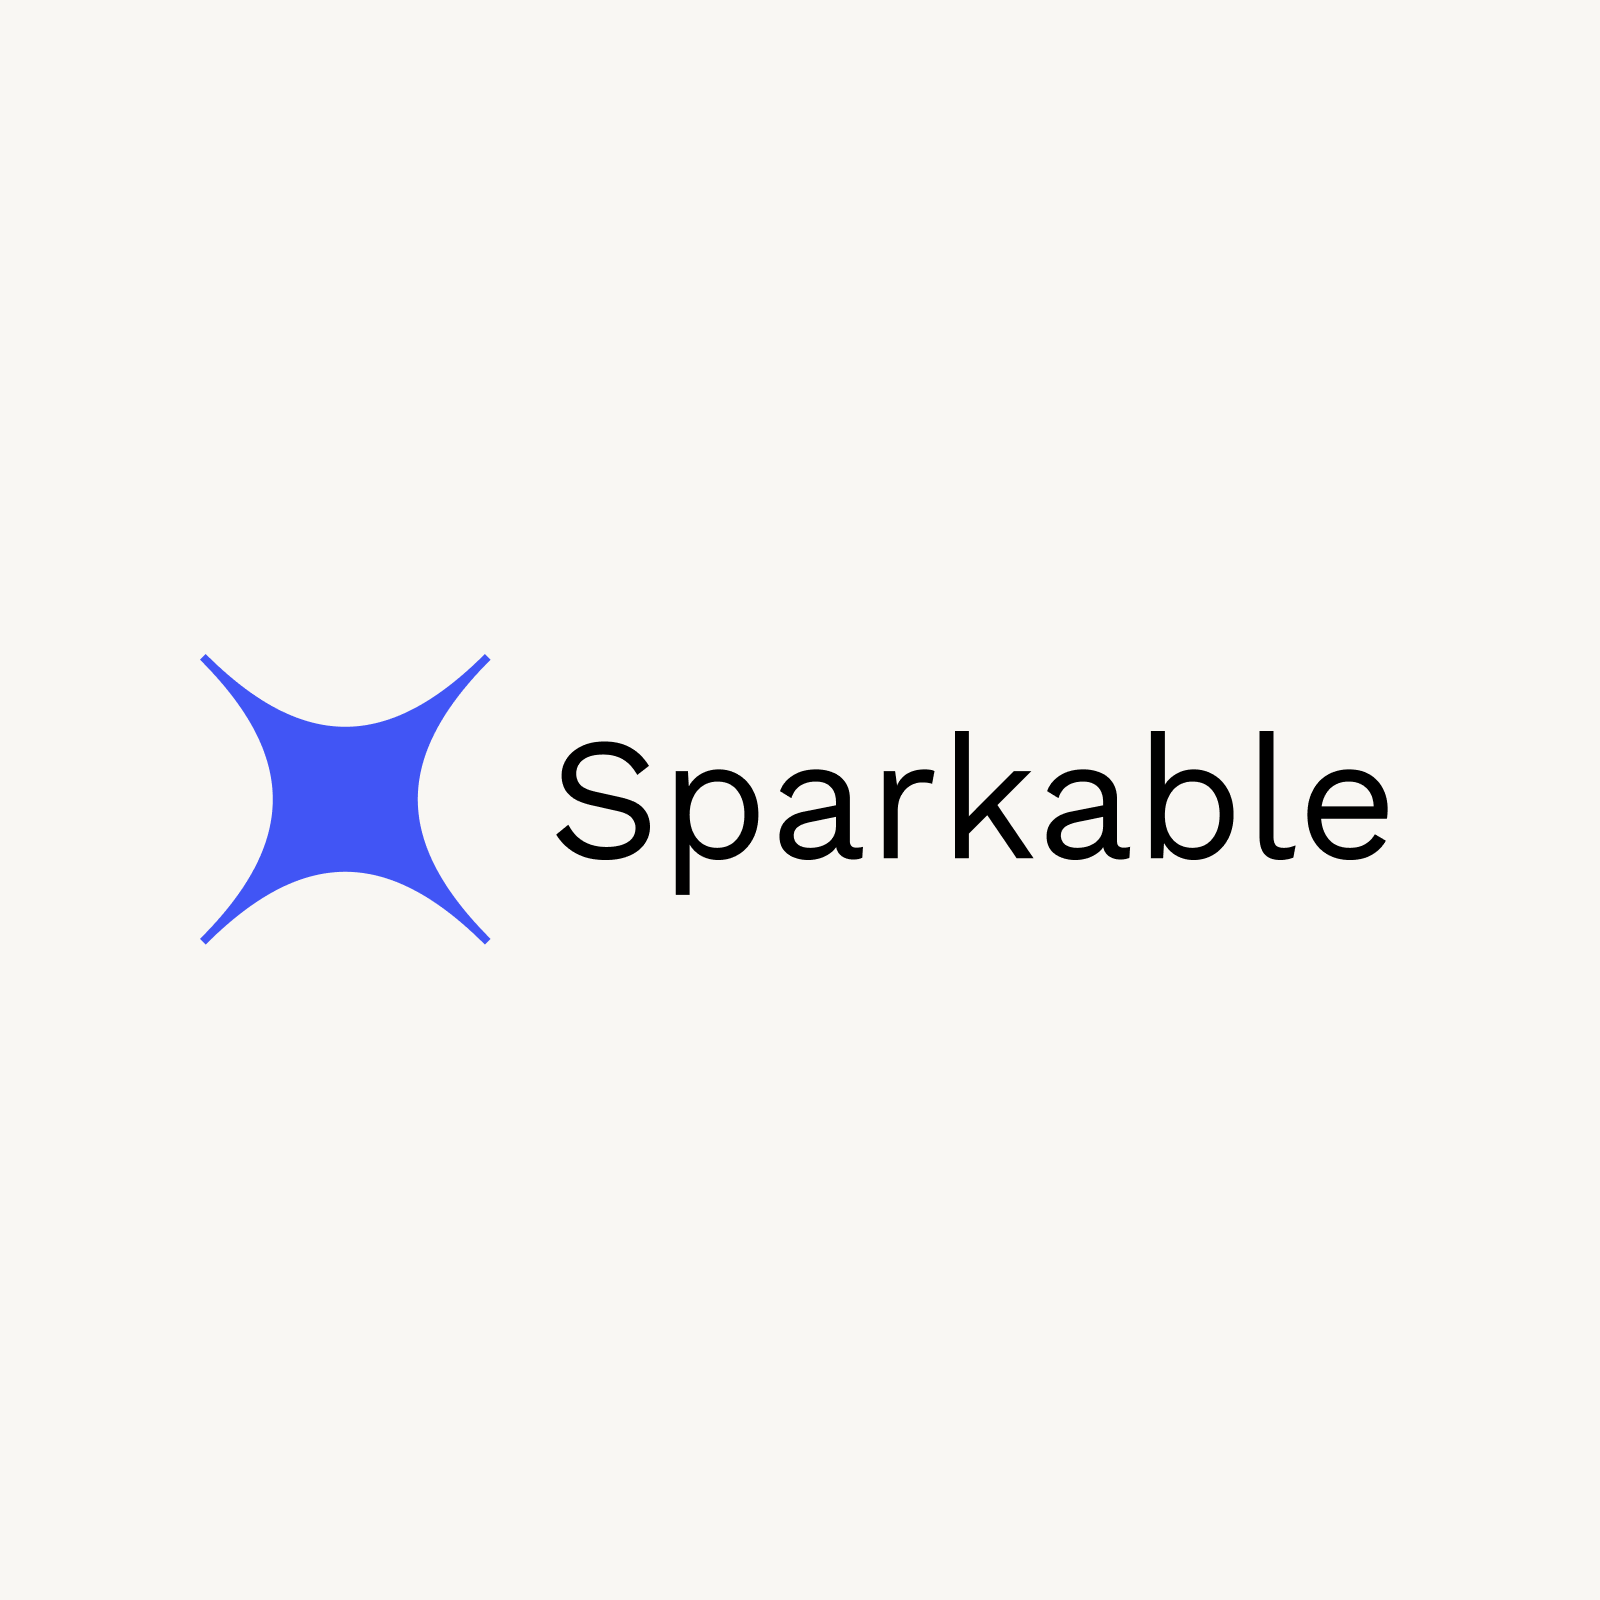 Sparkable logo